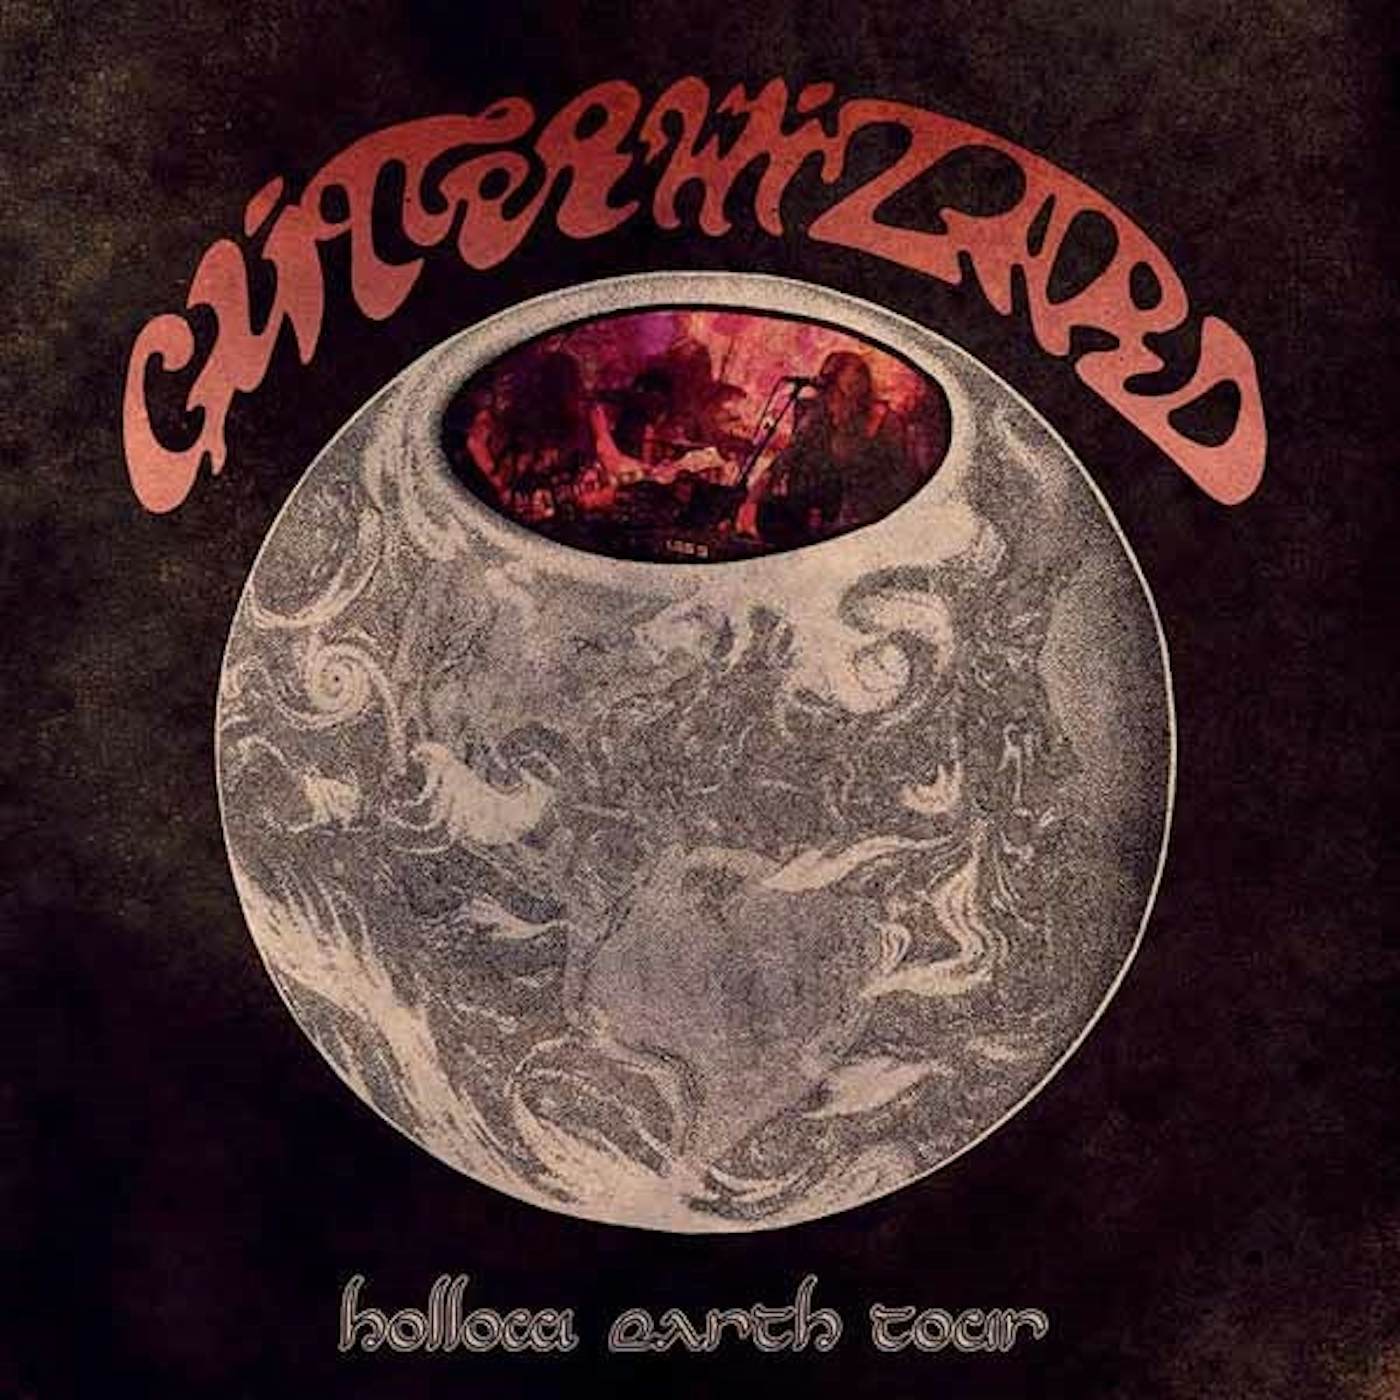  Glitter Wizard LP - Hollow Earth Tour (Vinyl)